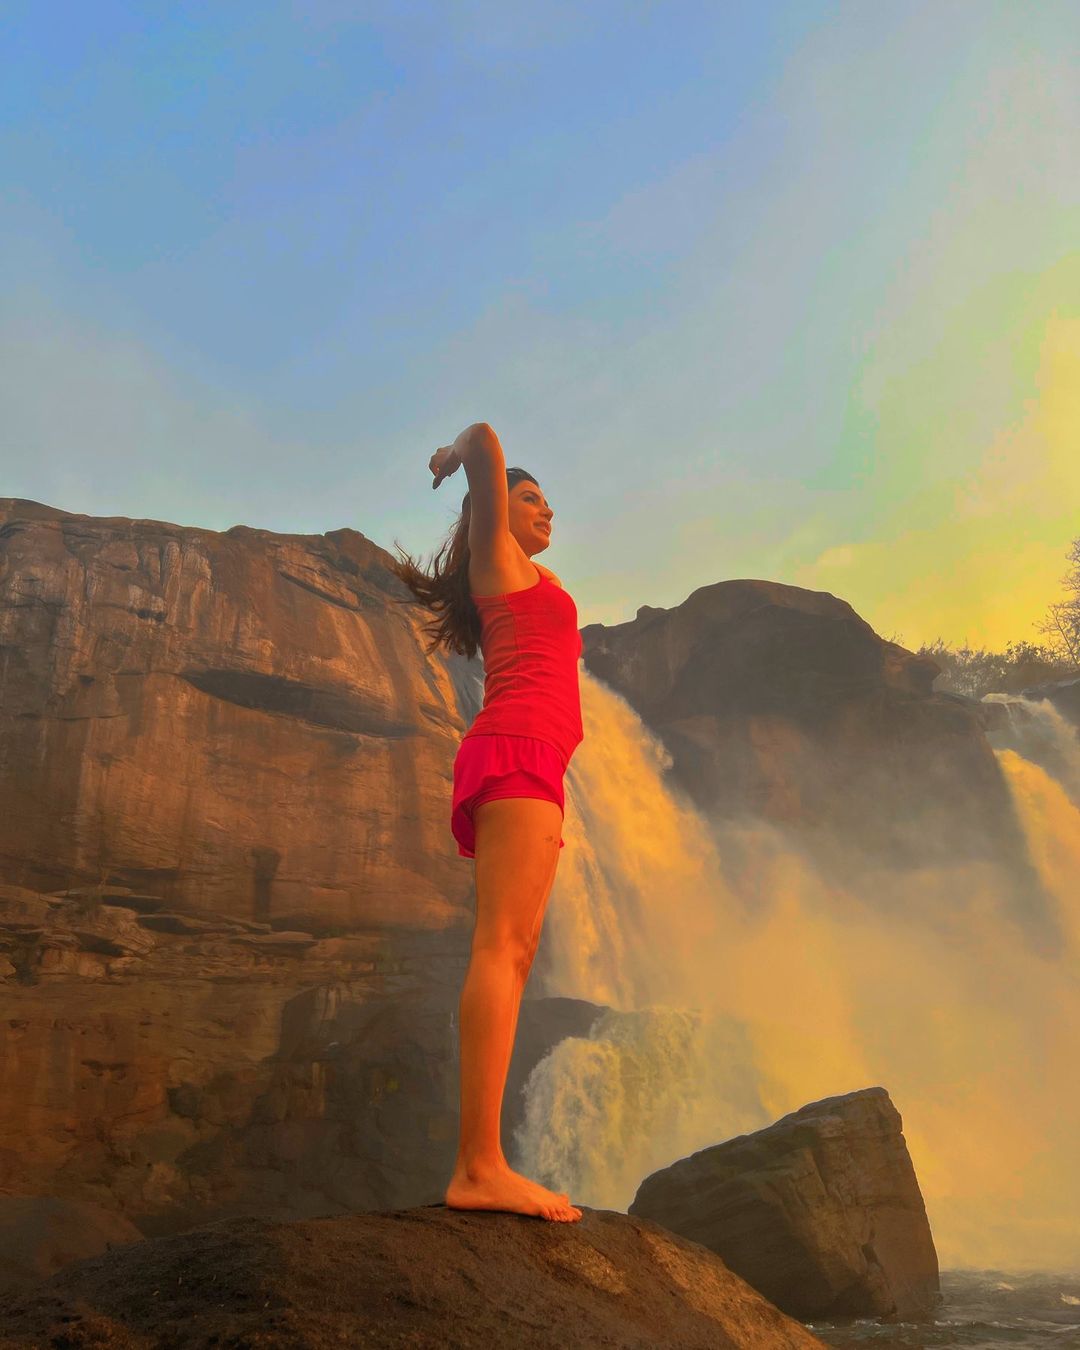 Samantha enjoying in athirapalli waterfalls photoshoot viral